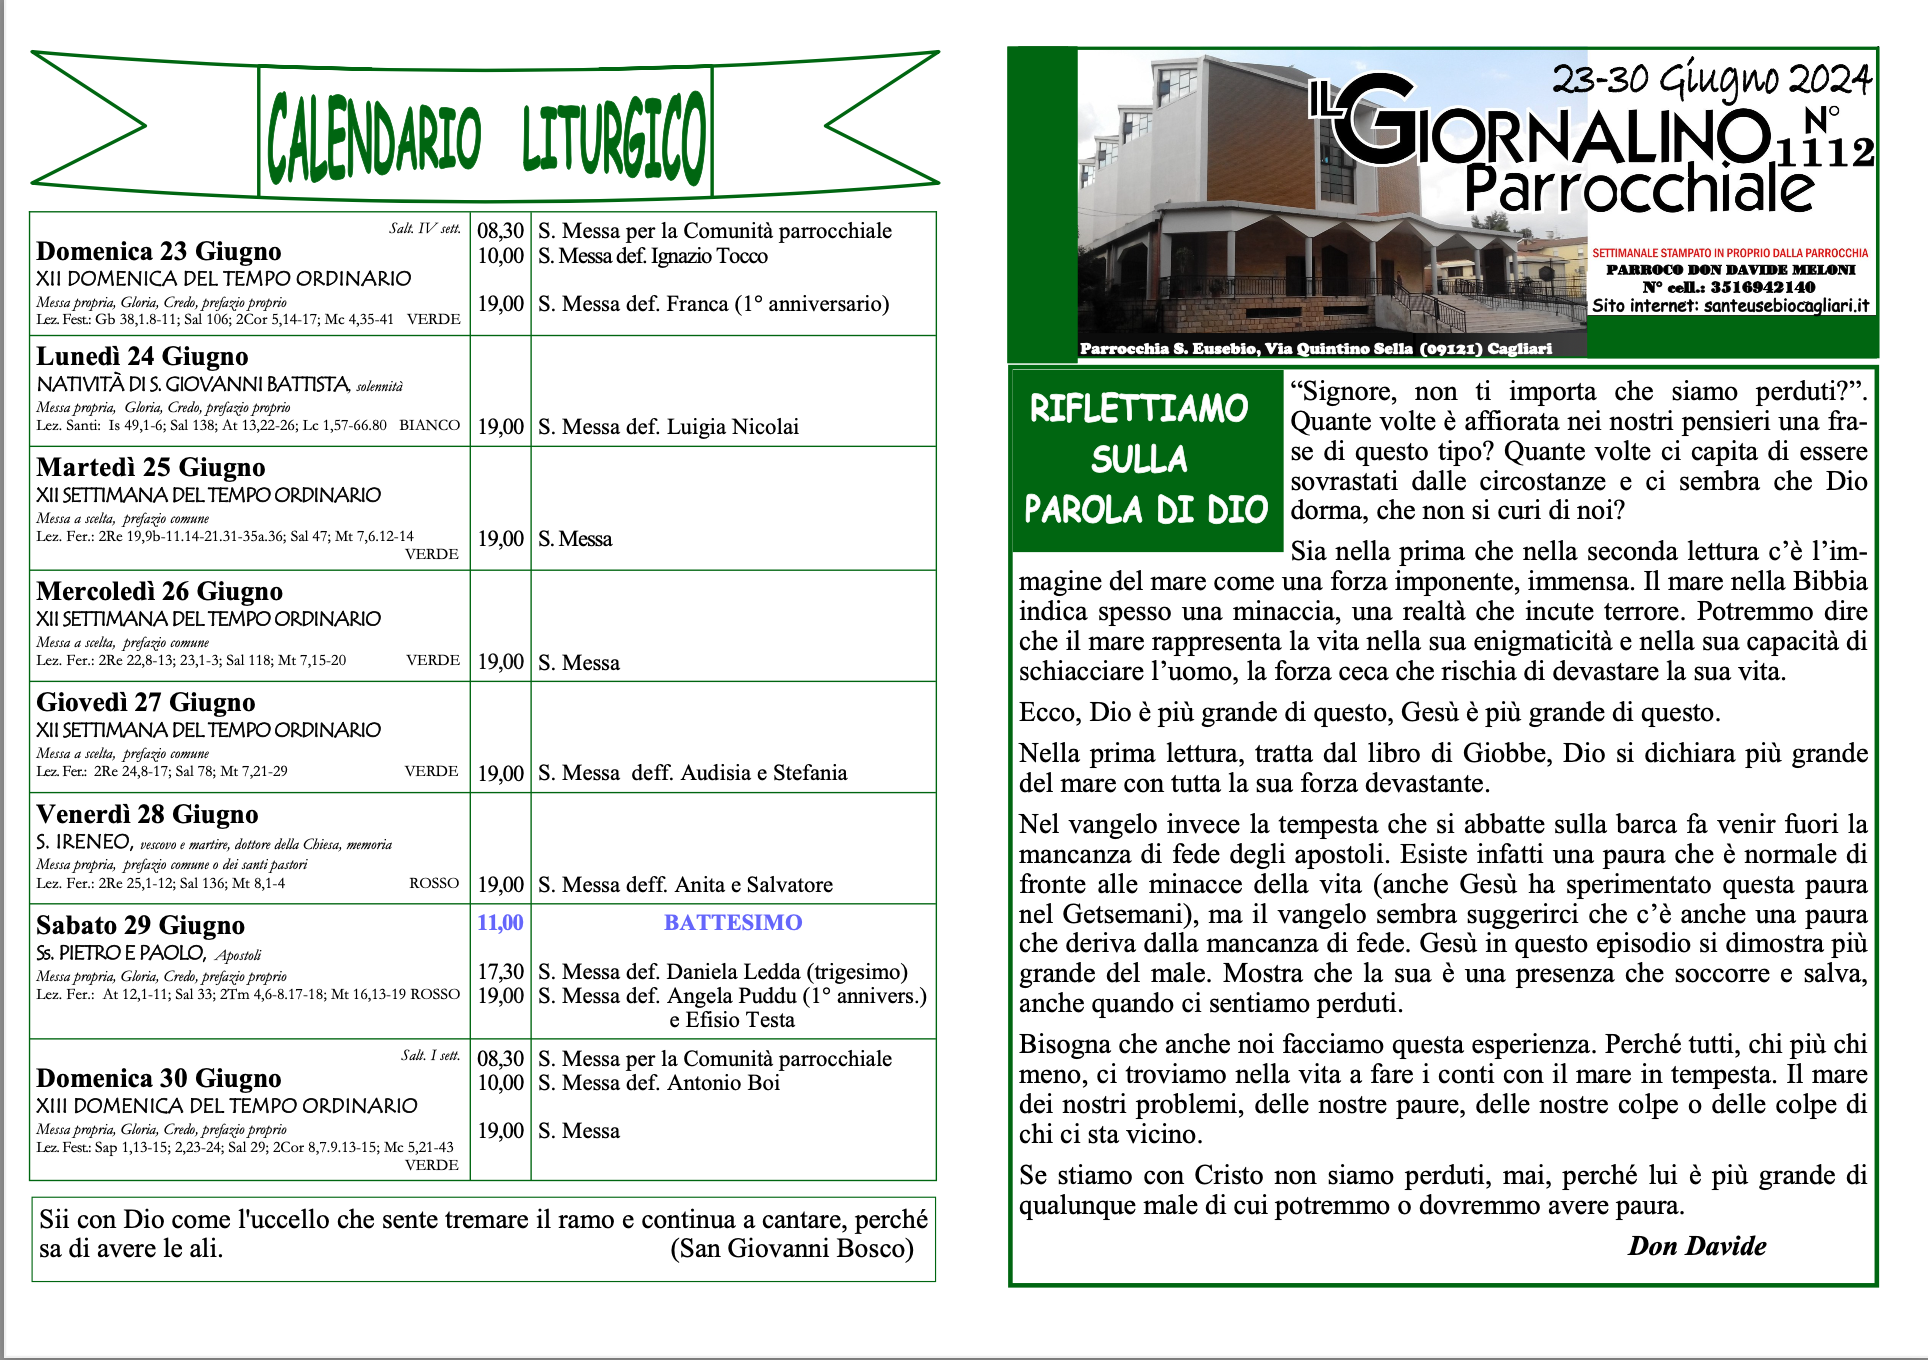 Calendario liturgico e giornalino parrocchiale 23-30 giugno 2024